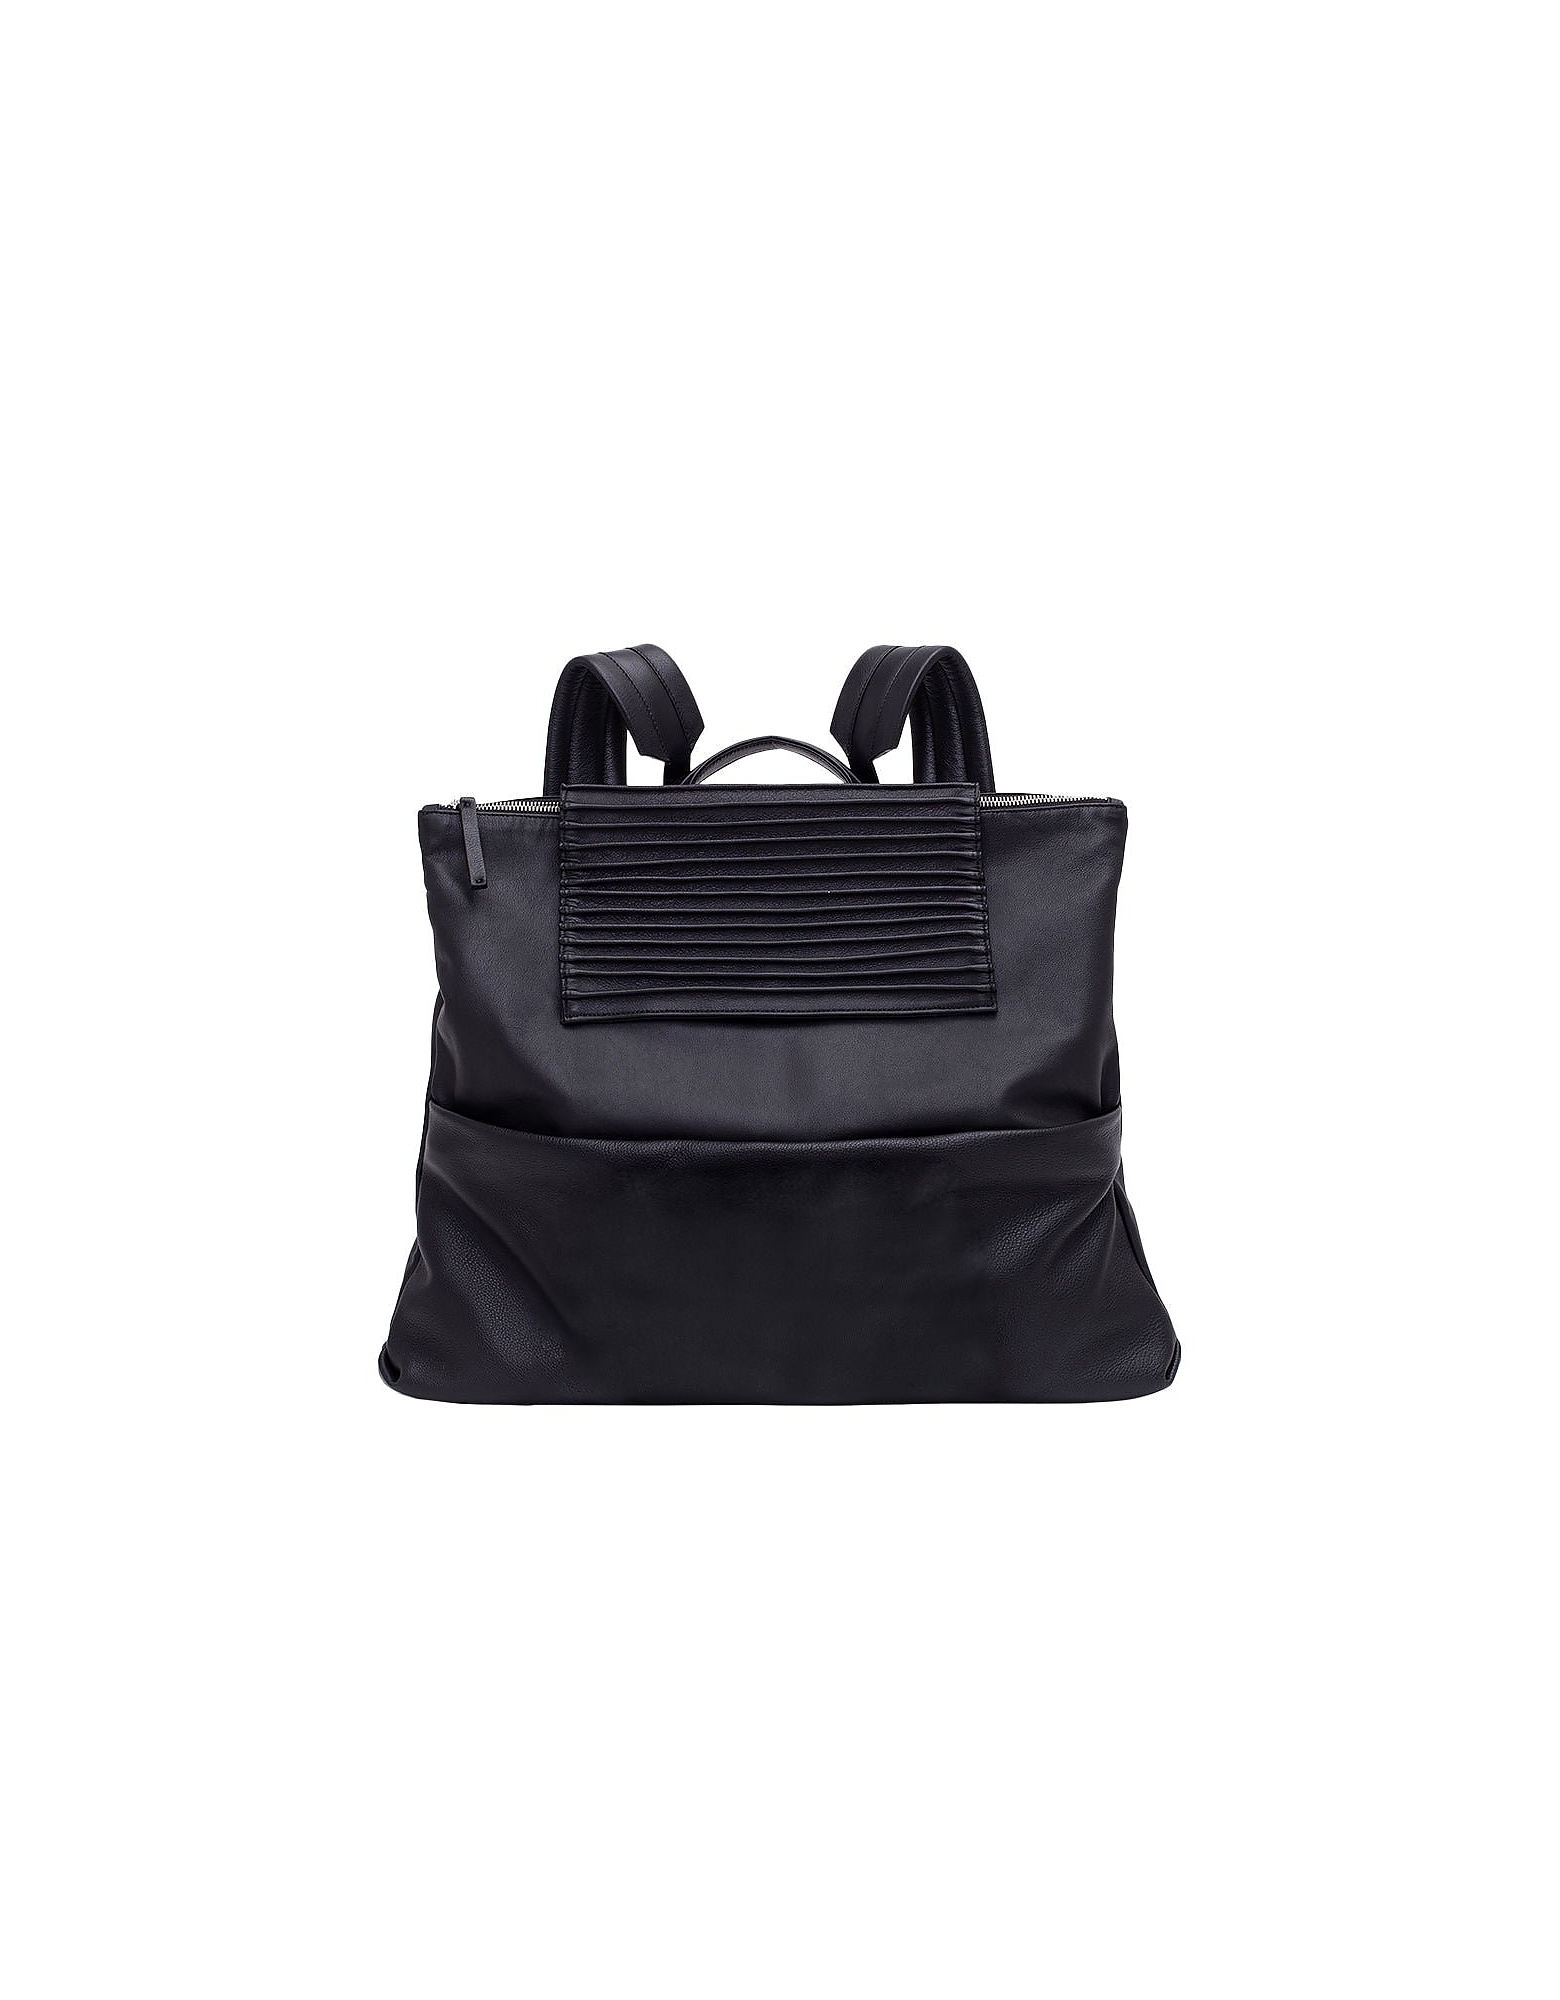 Sara Valente Designer Handbags Virgo Sv - Backpack In Noir